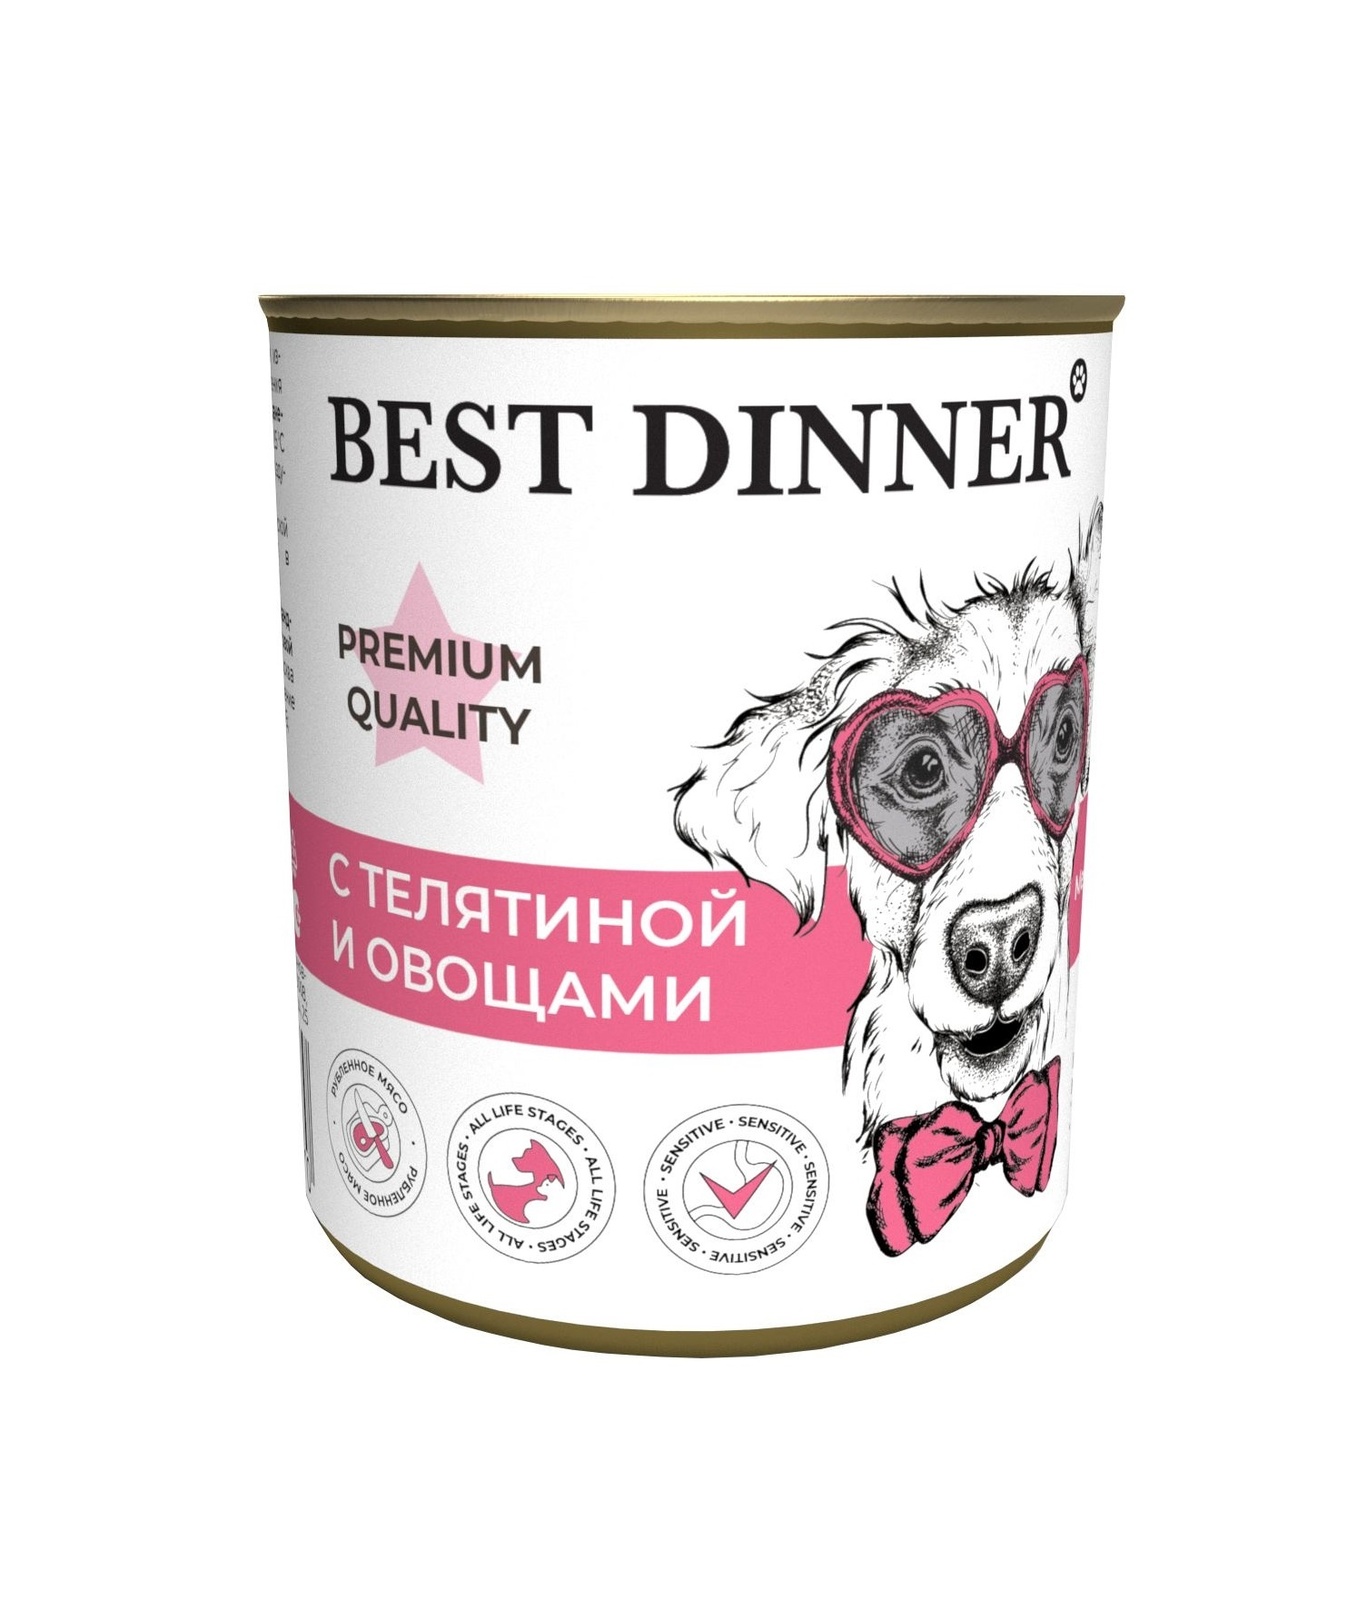 Best Dinner Best Dinner консервы Premium меню №4: С телятиной и овощами (340 г) 42004